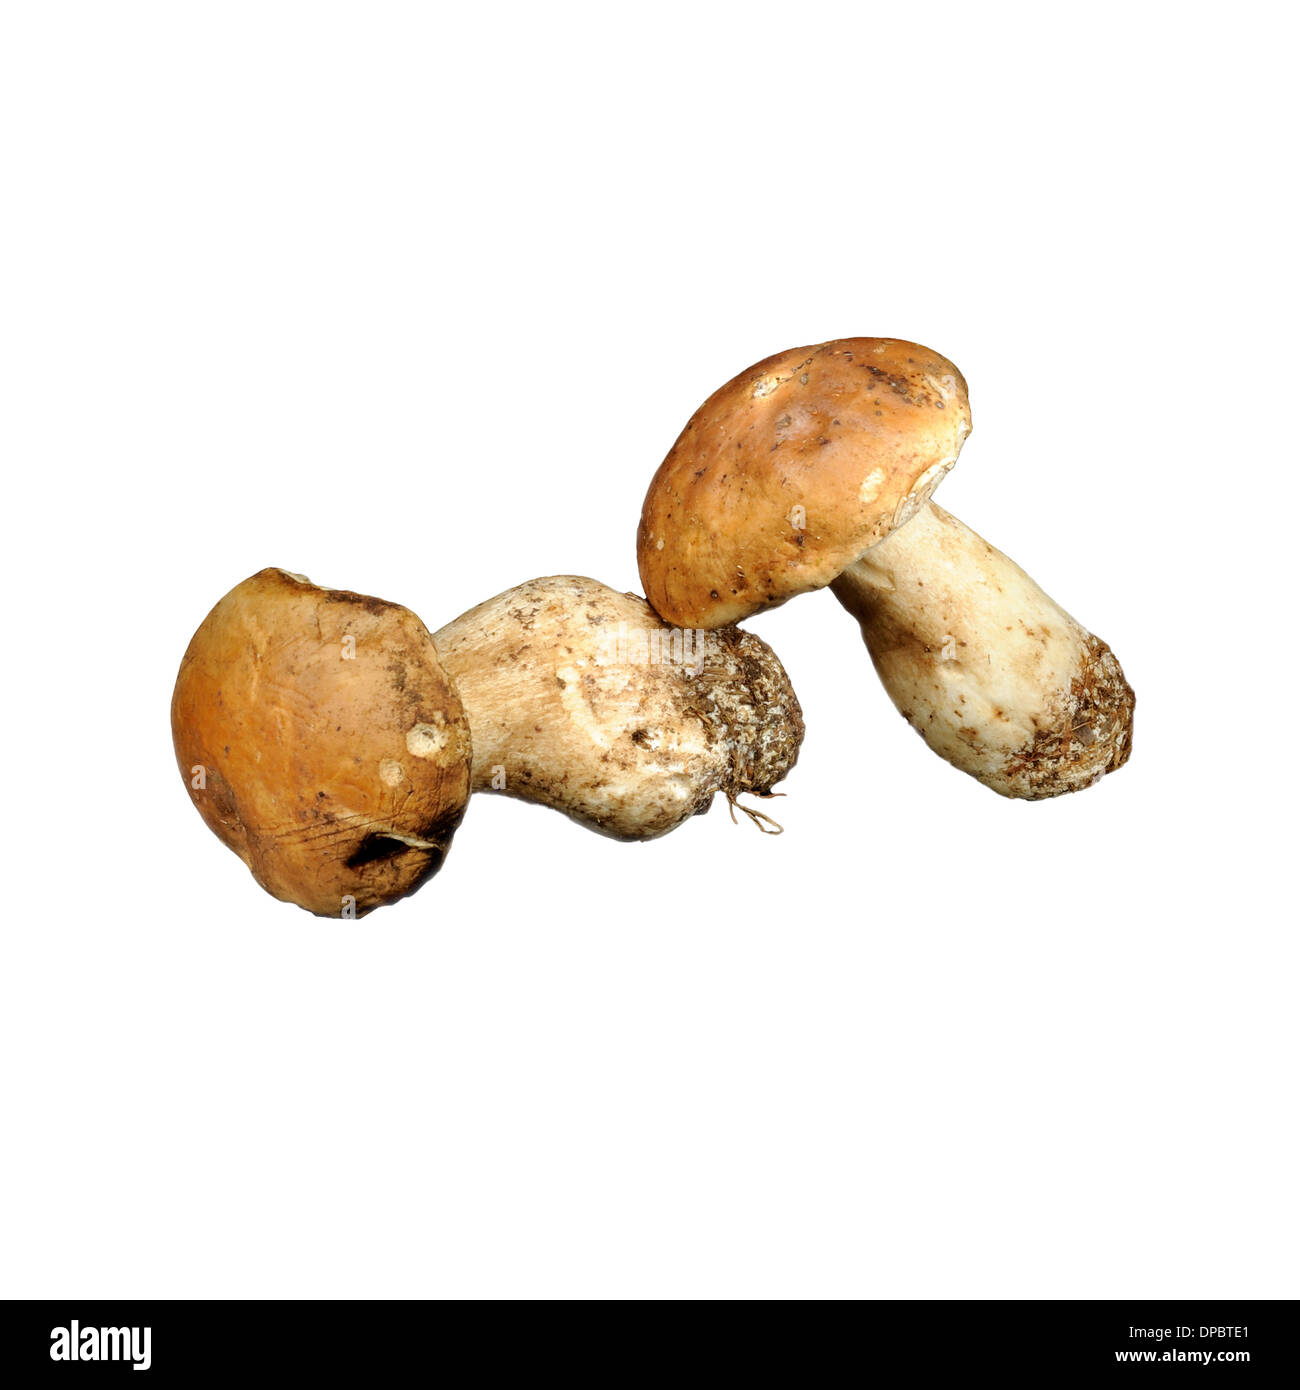 Porcines Pilze (Boletus Edulis), auf weißem Hintergrund. Stockfoto